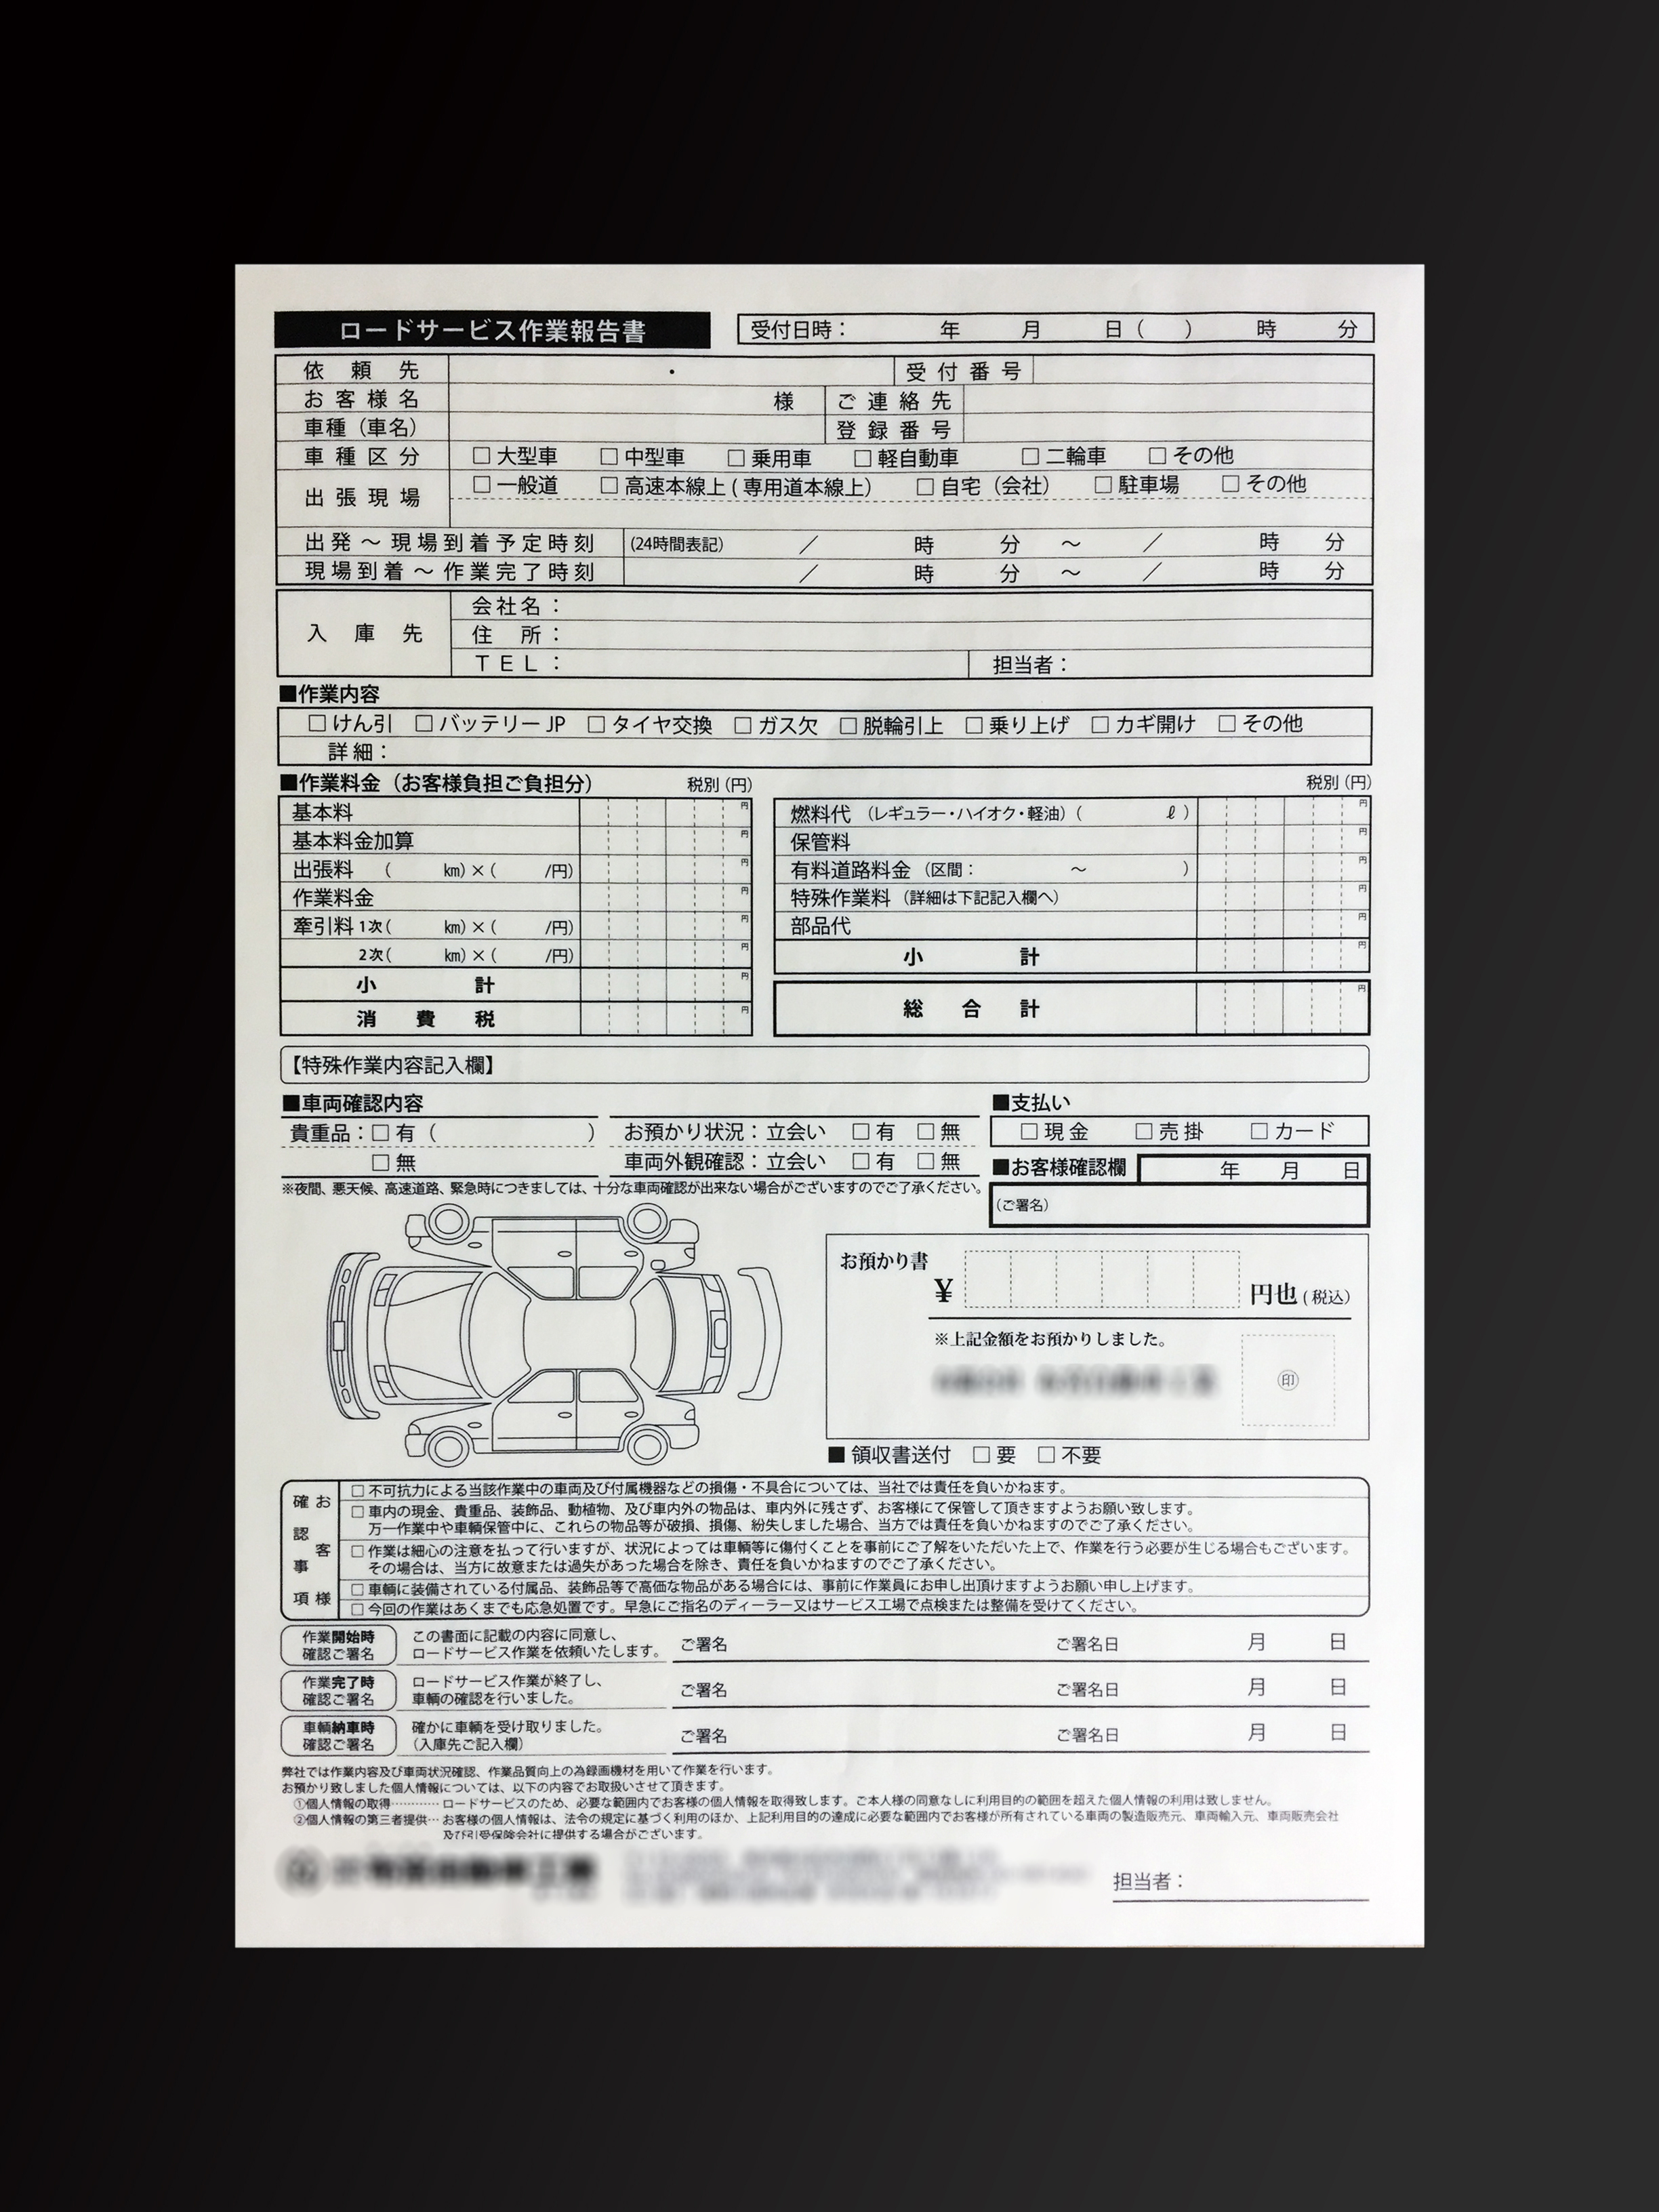 自動車整備業で使用するロードサービス作業報告者(2枚複写)の伝票作成実績